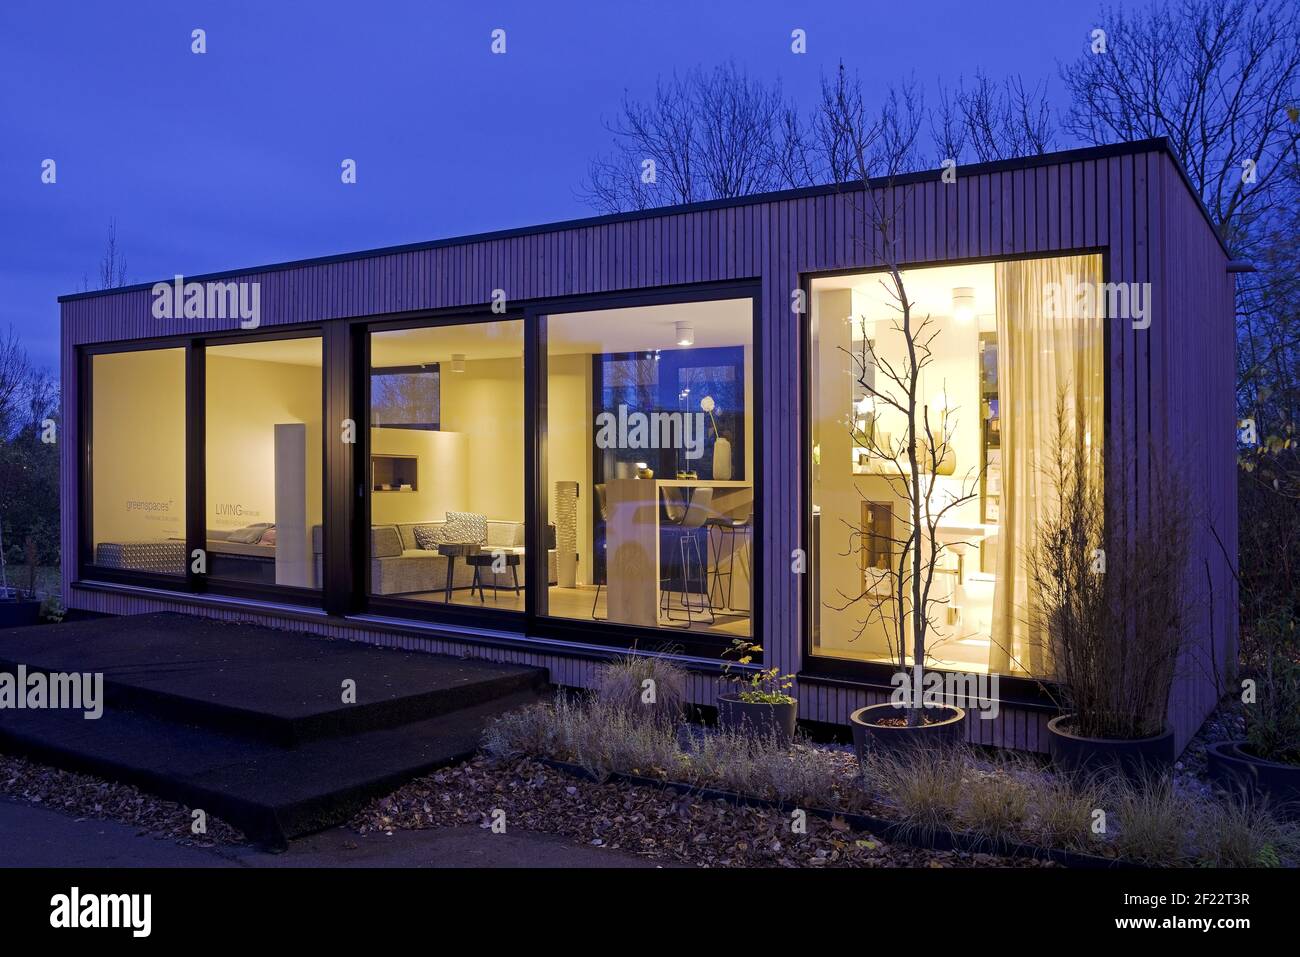 Petite maison, vivant sur 40 mètres carrés, maison d'exposition, Dortmund, Allemagne, Europe Banque D'Images